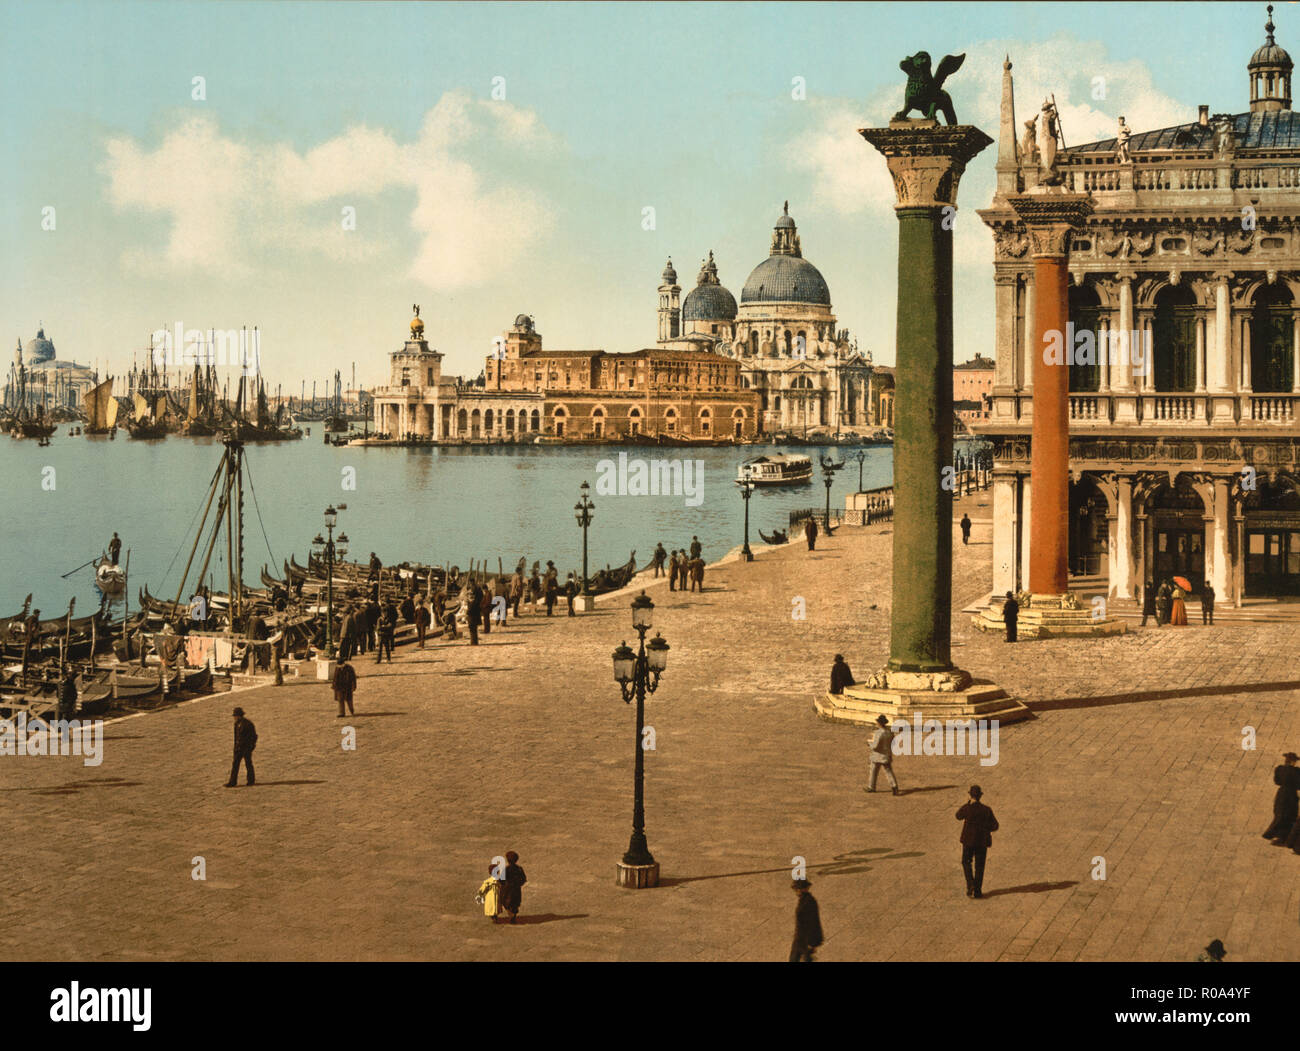 Piazzetta und Spalten von Markusplatz, Venedig, Italien, Photochrom Print, Detroit Publishing Company, 1900 Stockfoto